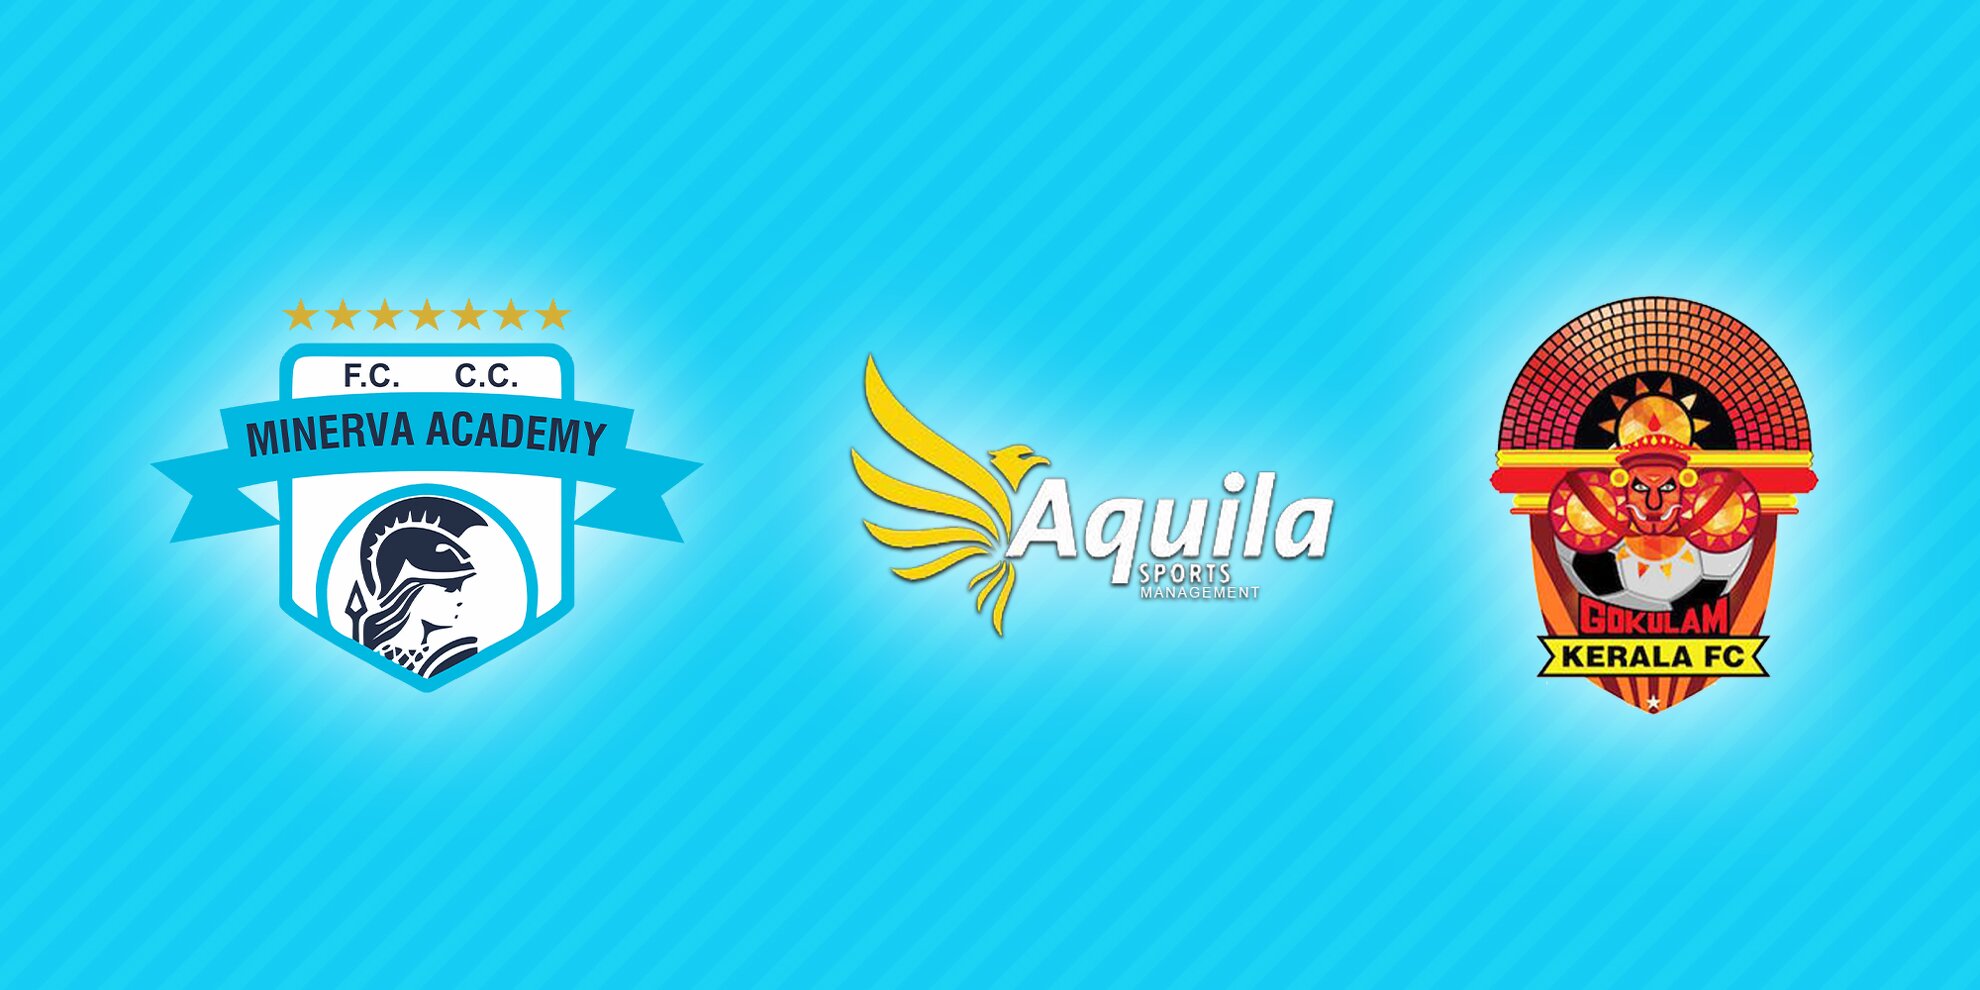 Aquila Sports Management